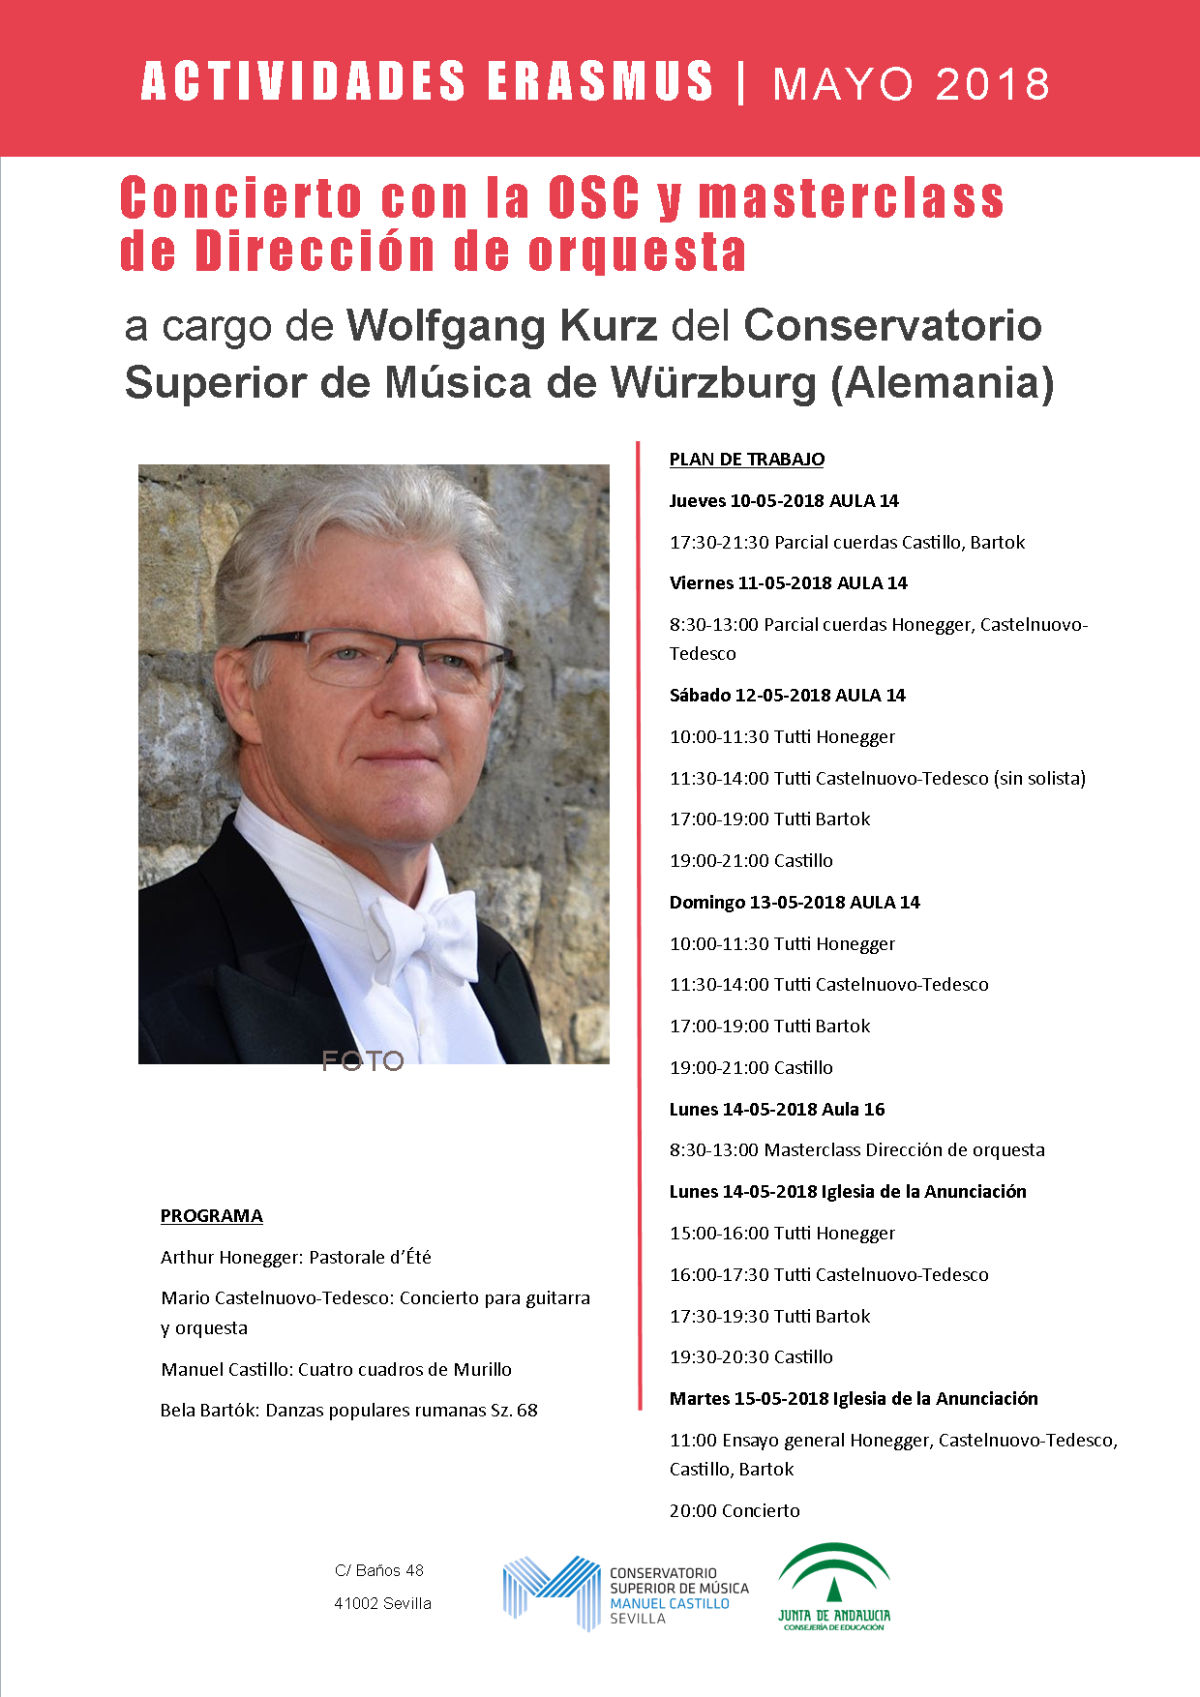 Masterclass de dirección de orquesta y concierto con la OSC — Wolfgang Kurz